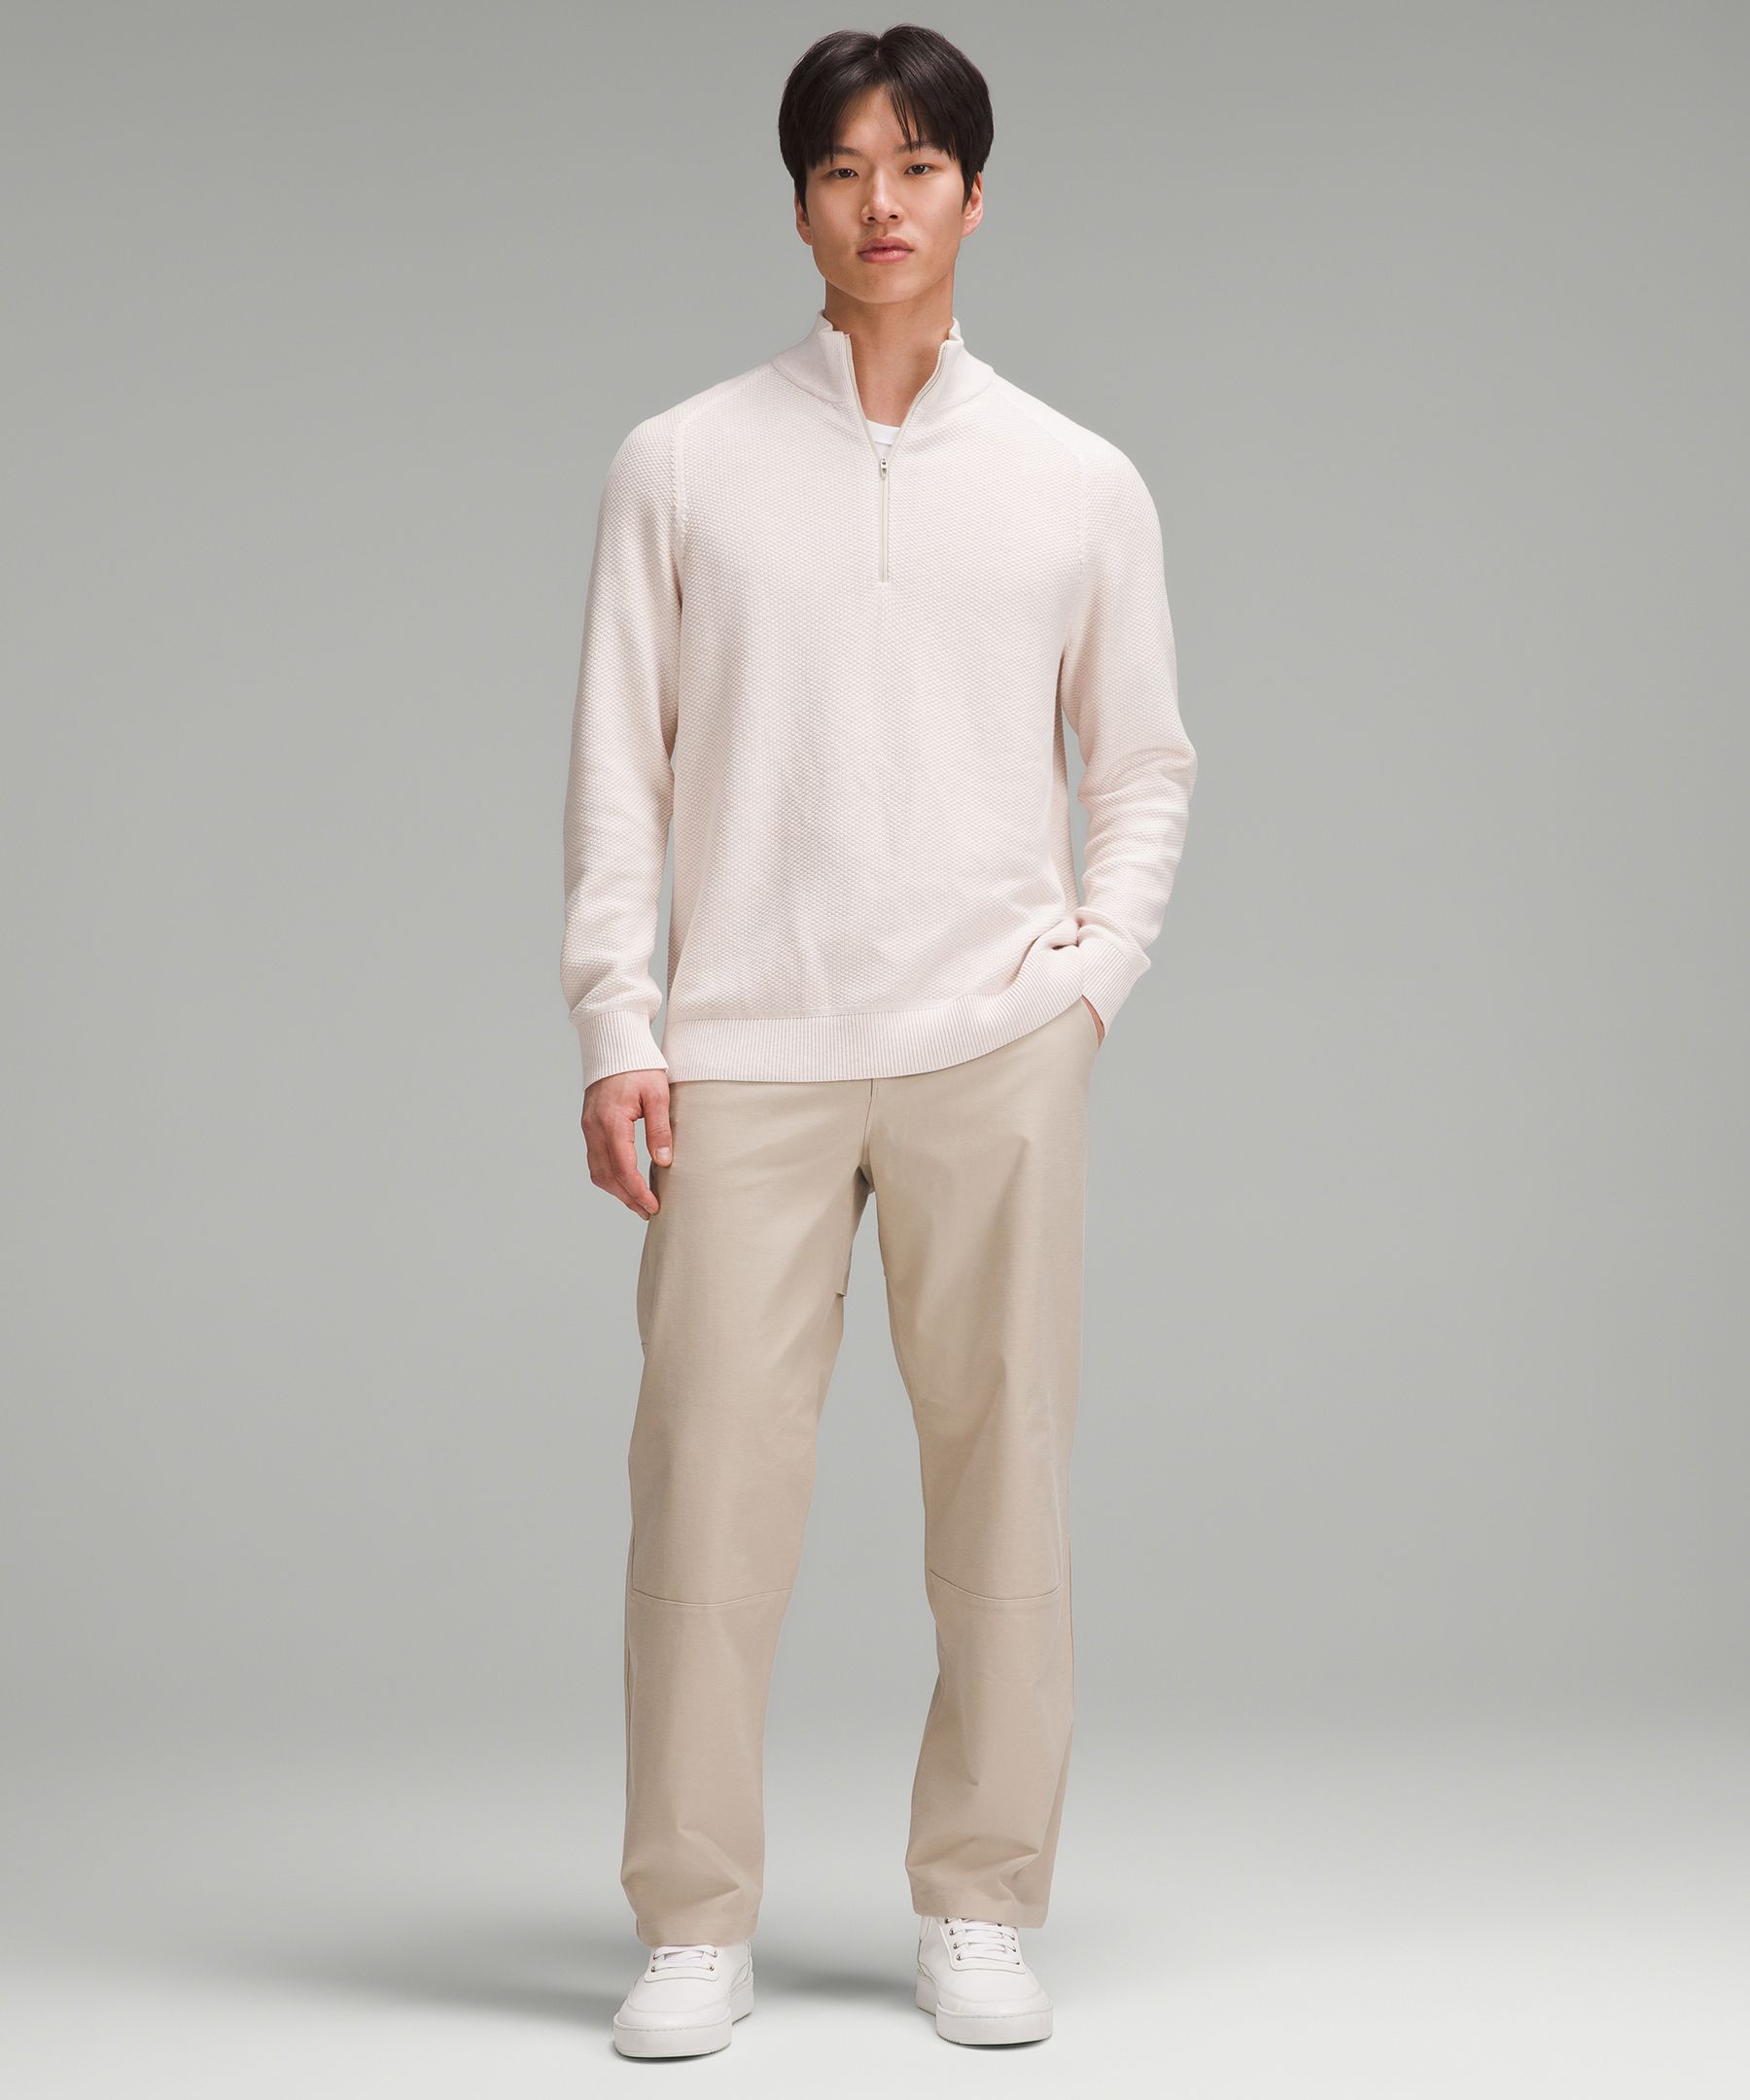 Textured Knit Half-Zip Sweater | Men's Hoodies & Sweatshirts